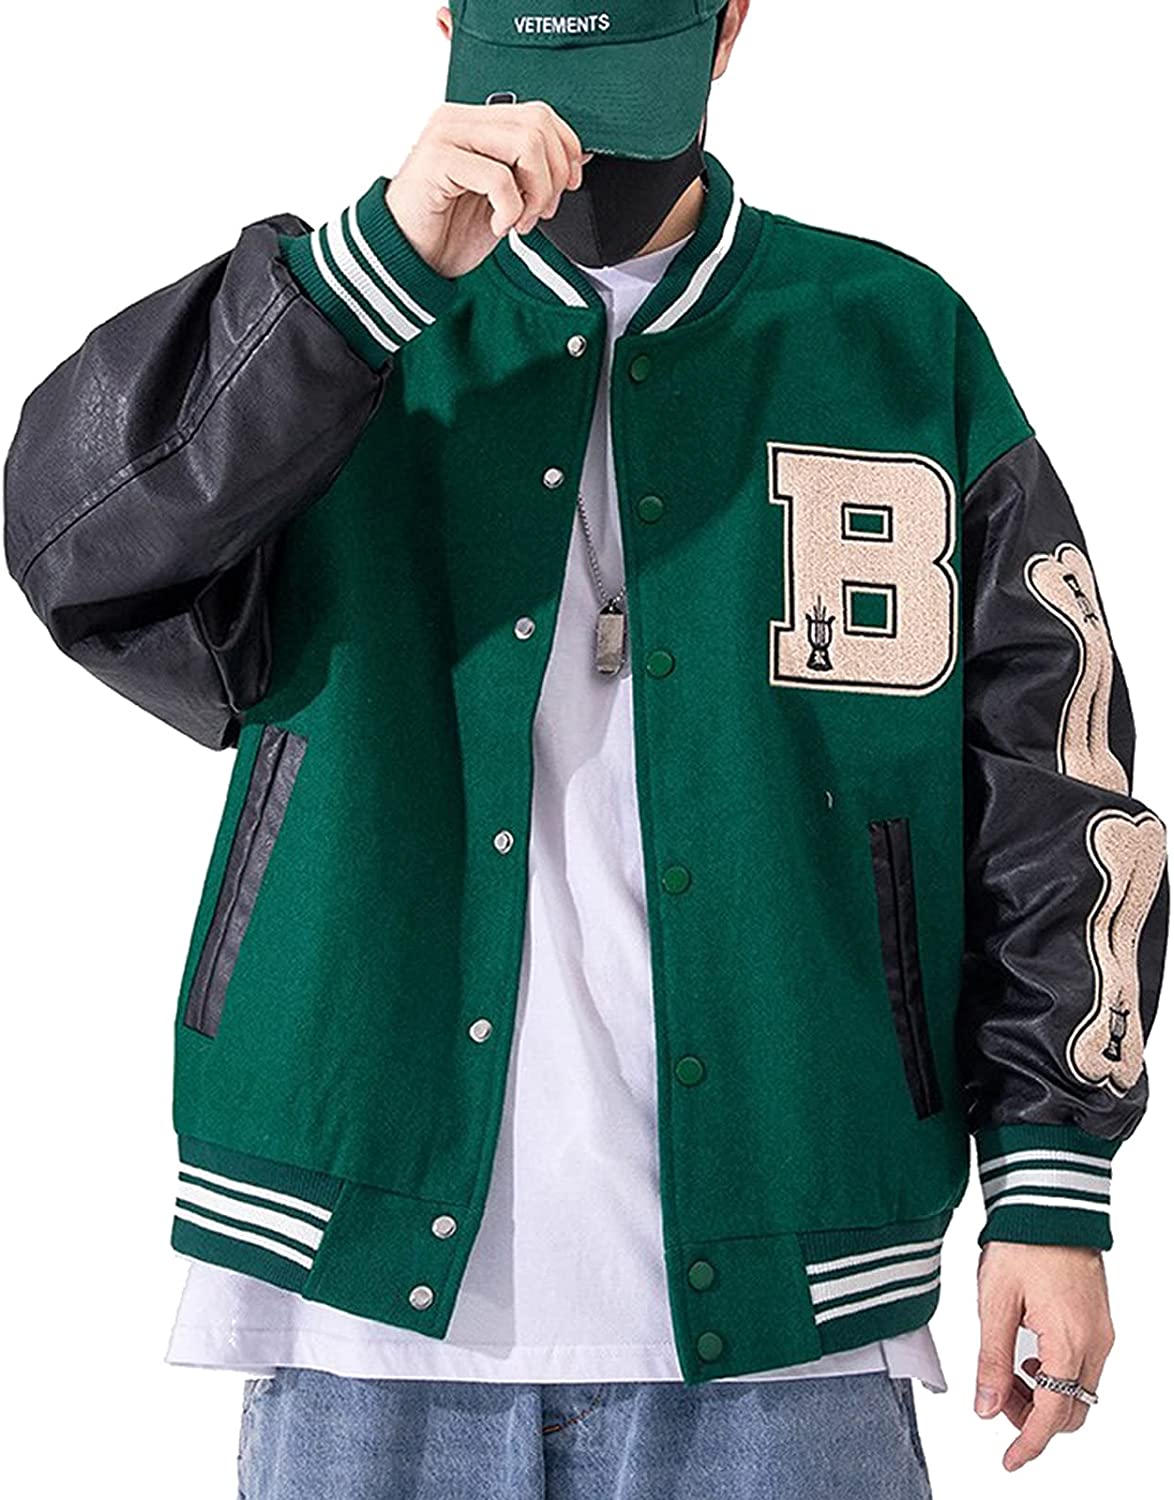 Moshtashio Mens Varsity College Jacket Baseball Bomber Jacket Vintage Sweatshirt Casual Unisex Streetwear Coats with Patch